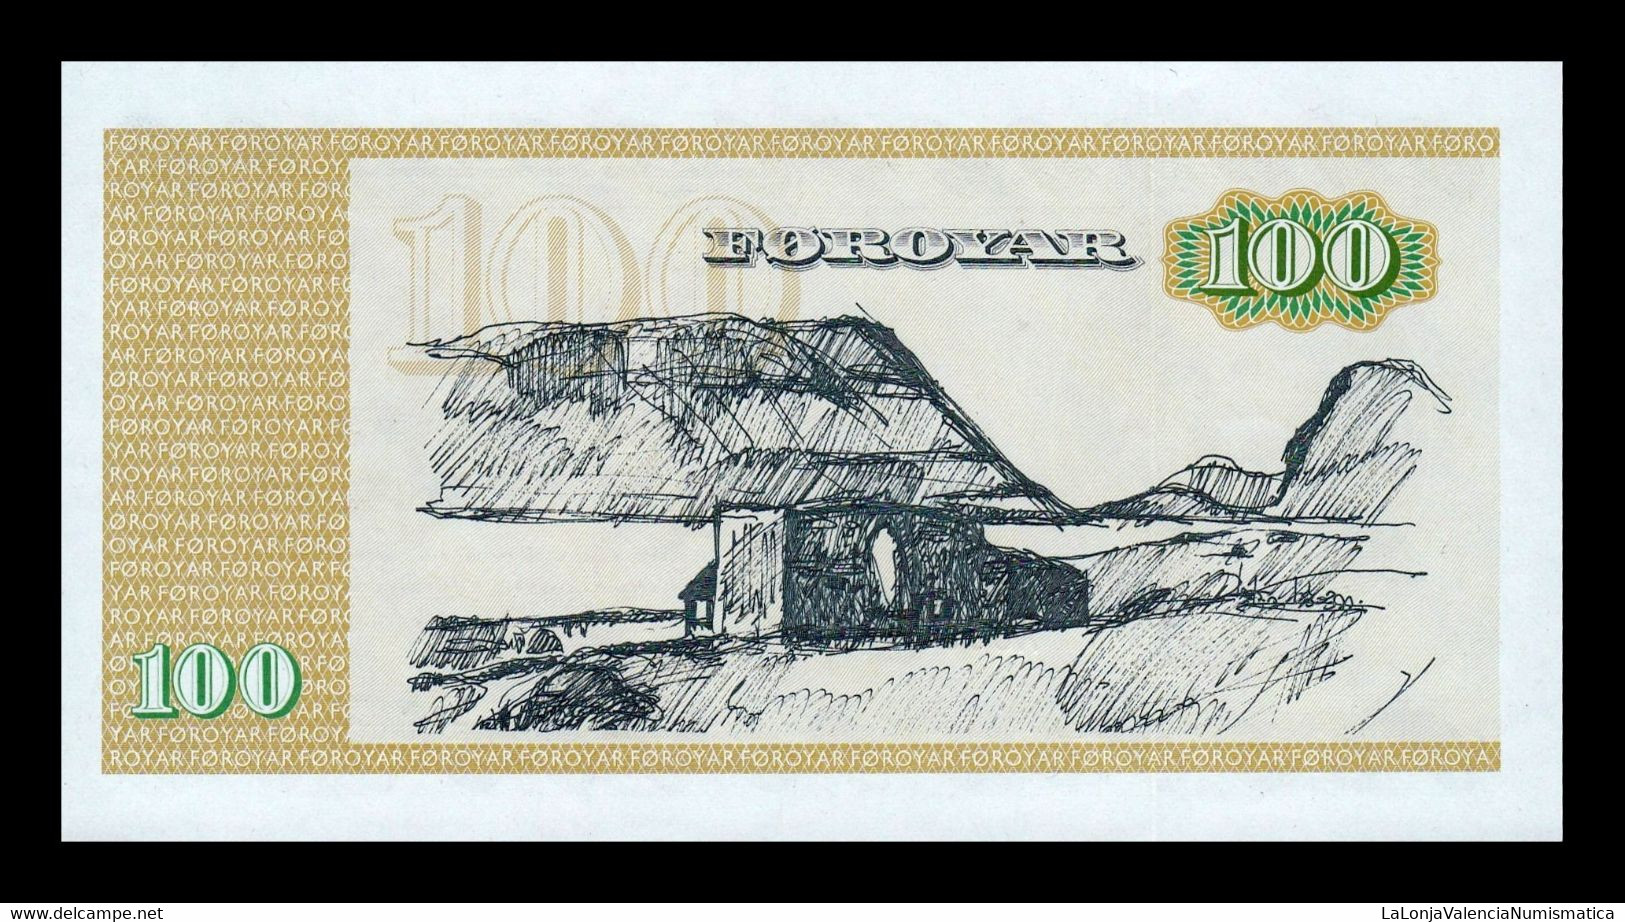 Islas Feroe Faeroe Islands 100 Kronur L.1949 (1990) Pick 21e SC UNC - Faroe Islands